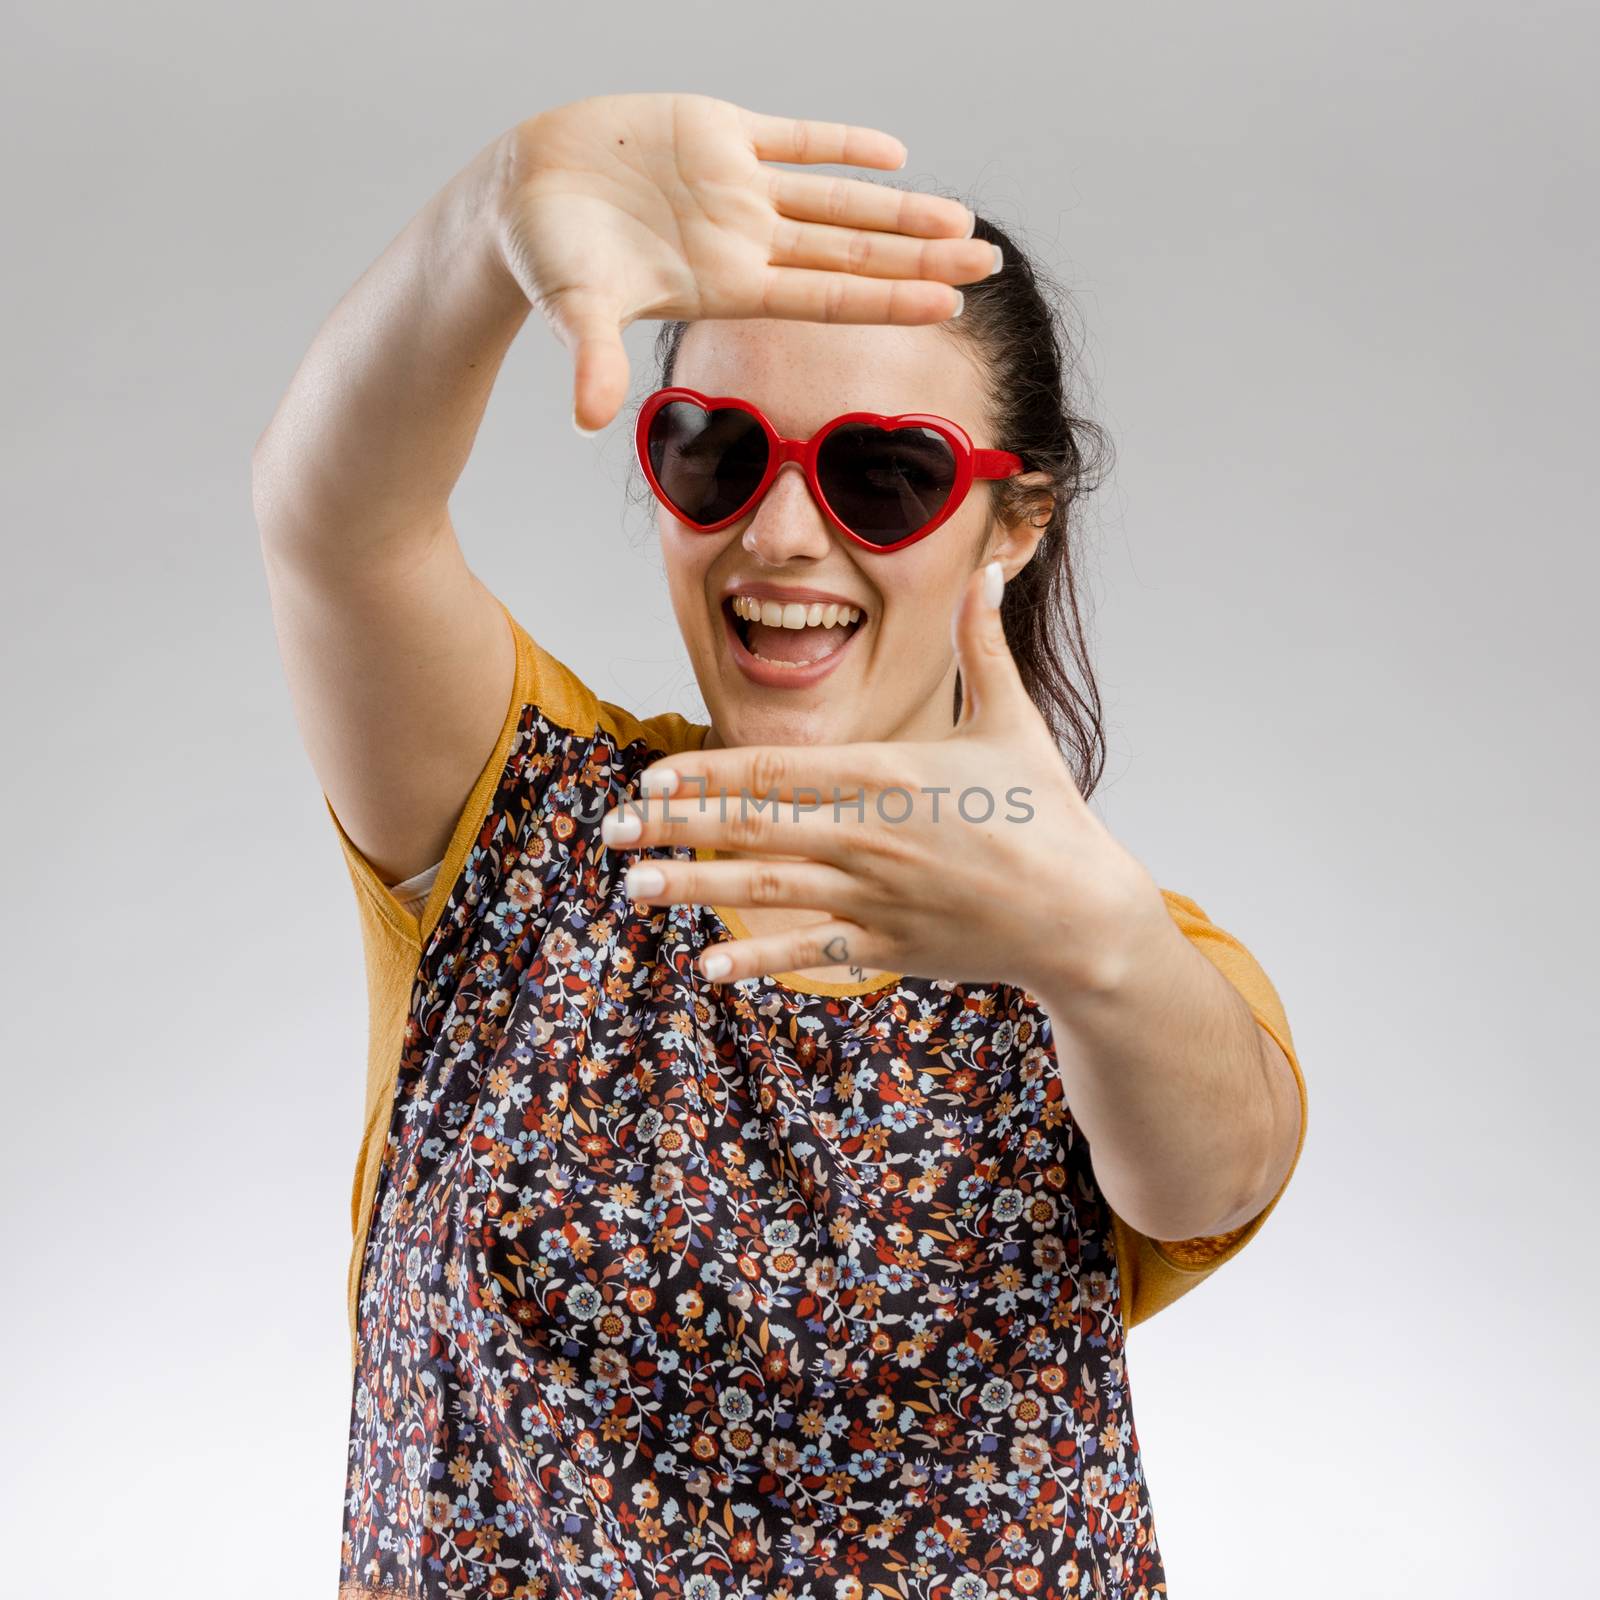 Portrait of a cute brunnet woman wearing sunglasses